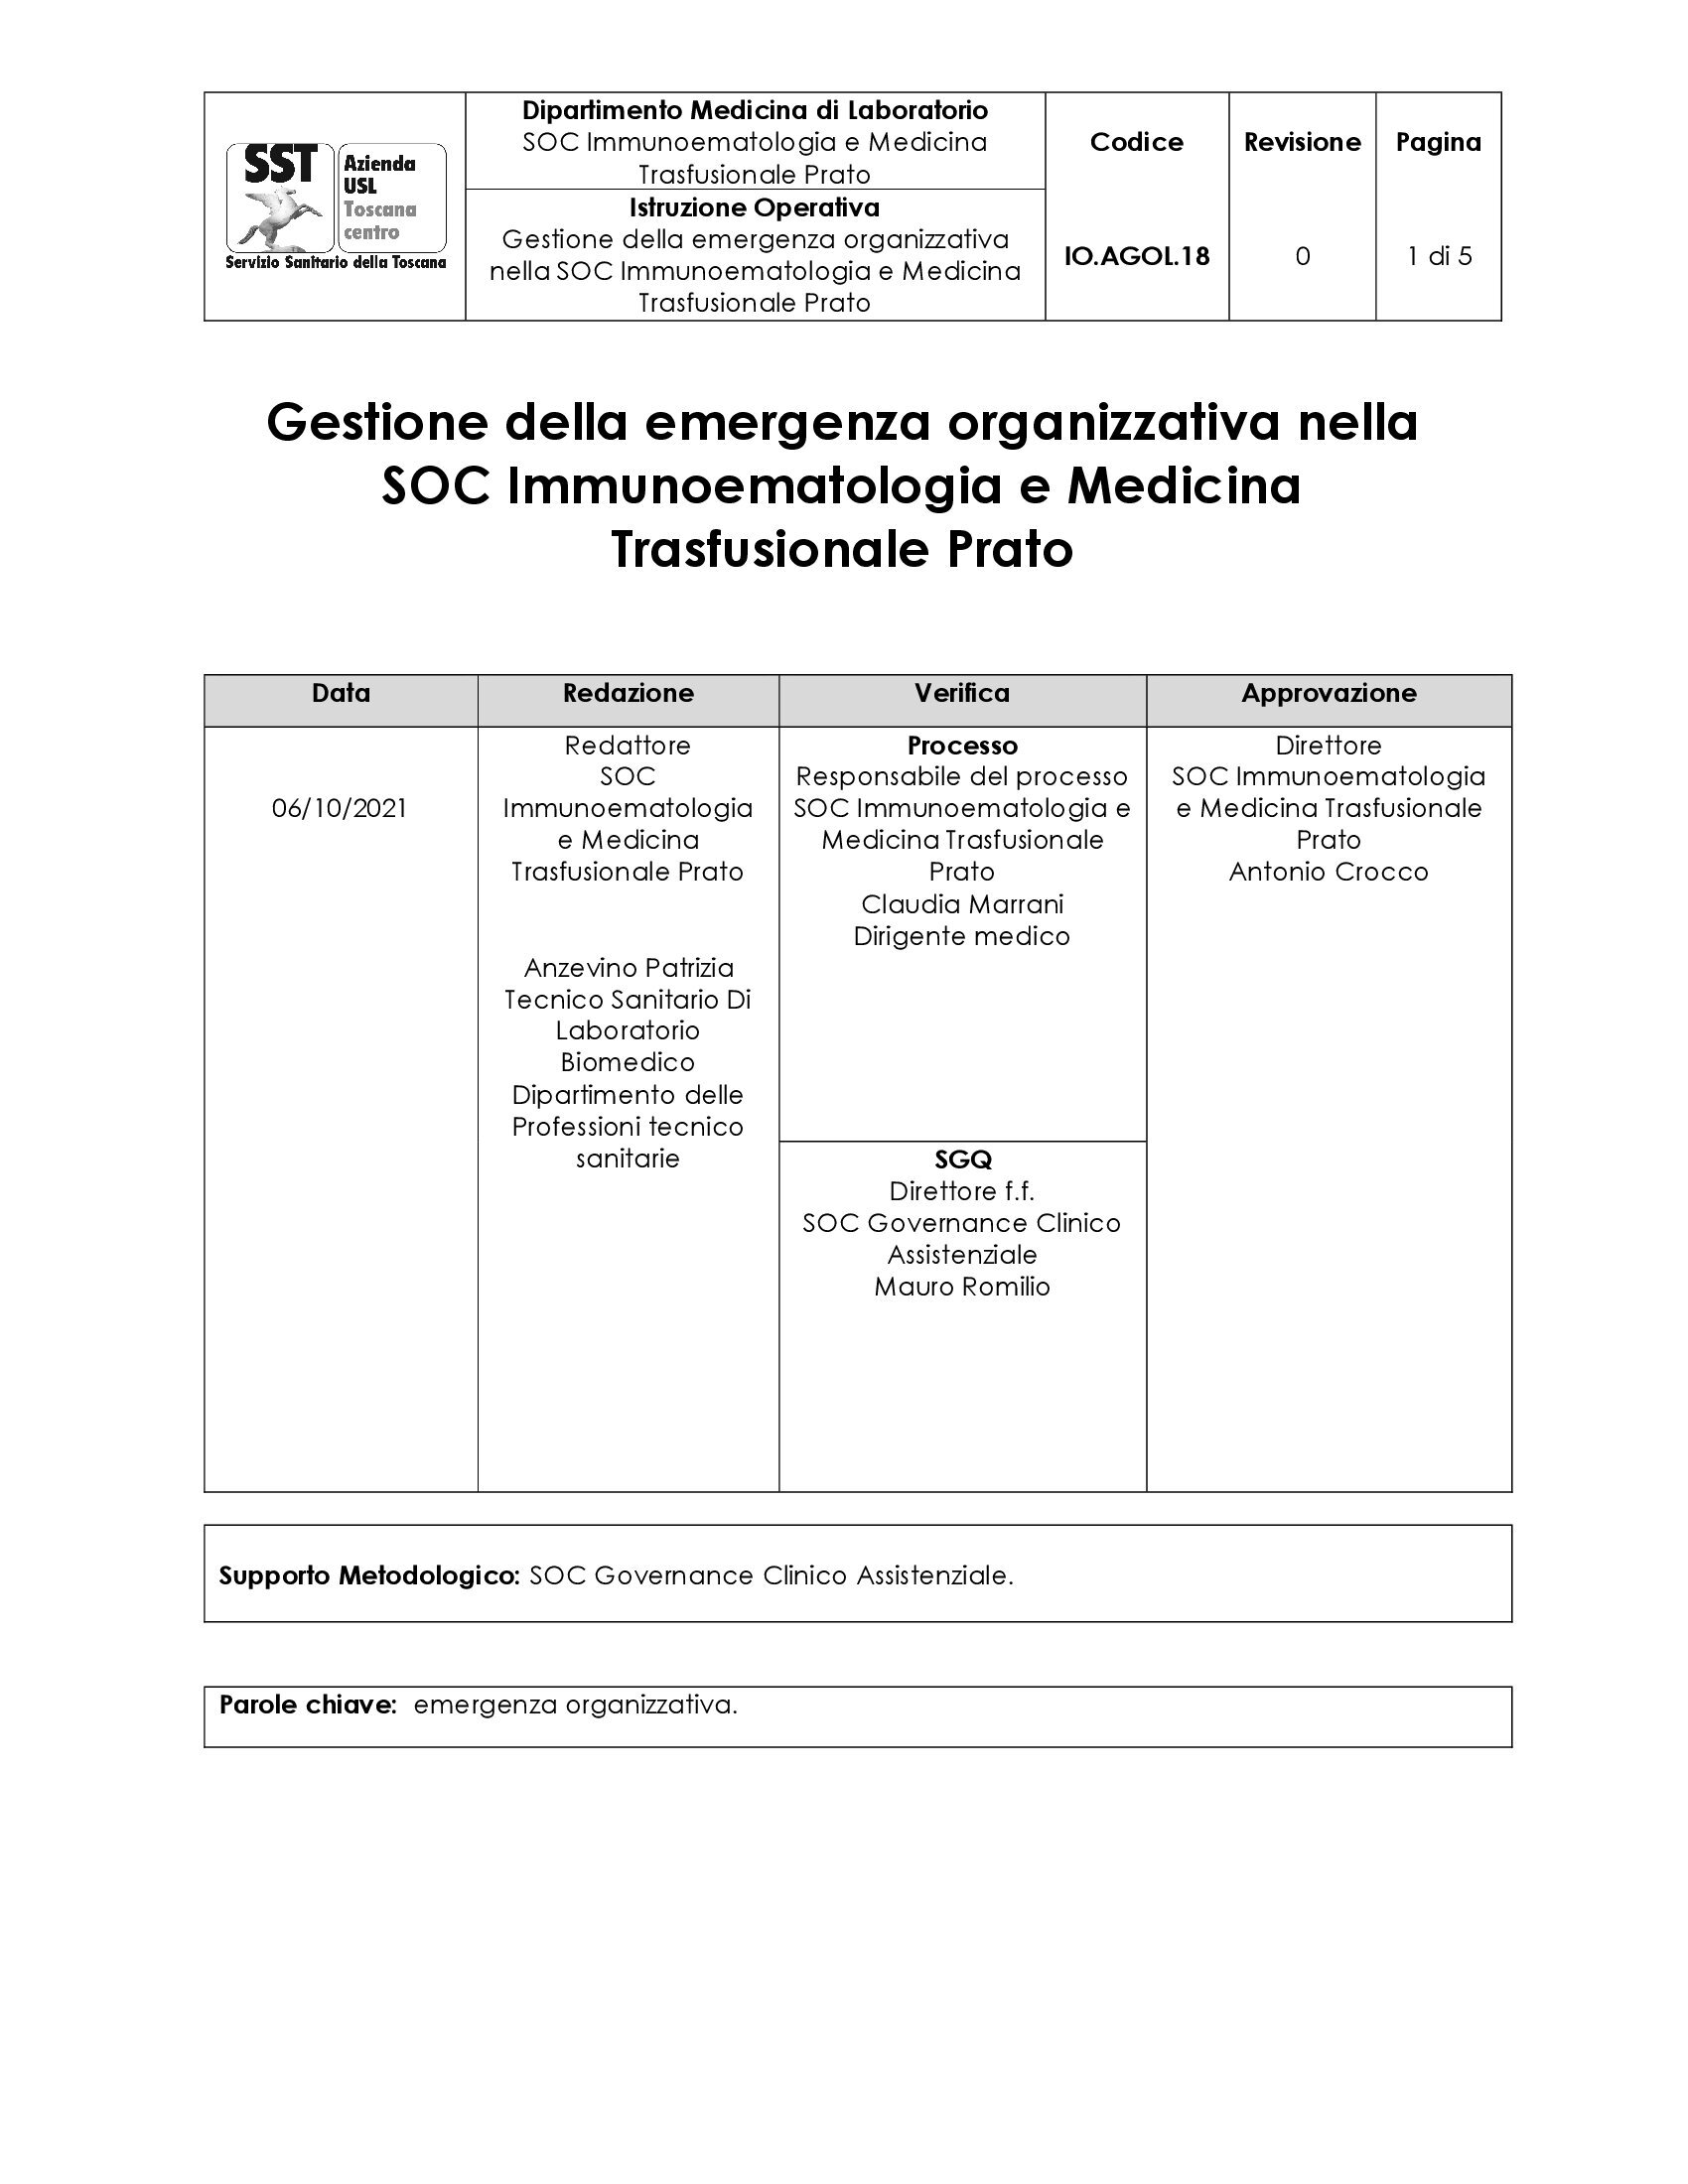 IO.AGOL.18 Gestione della emergenza organizzativa nella SOC Immunoematologia e Medicina Trasfusionale Prato